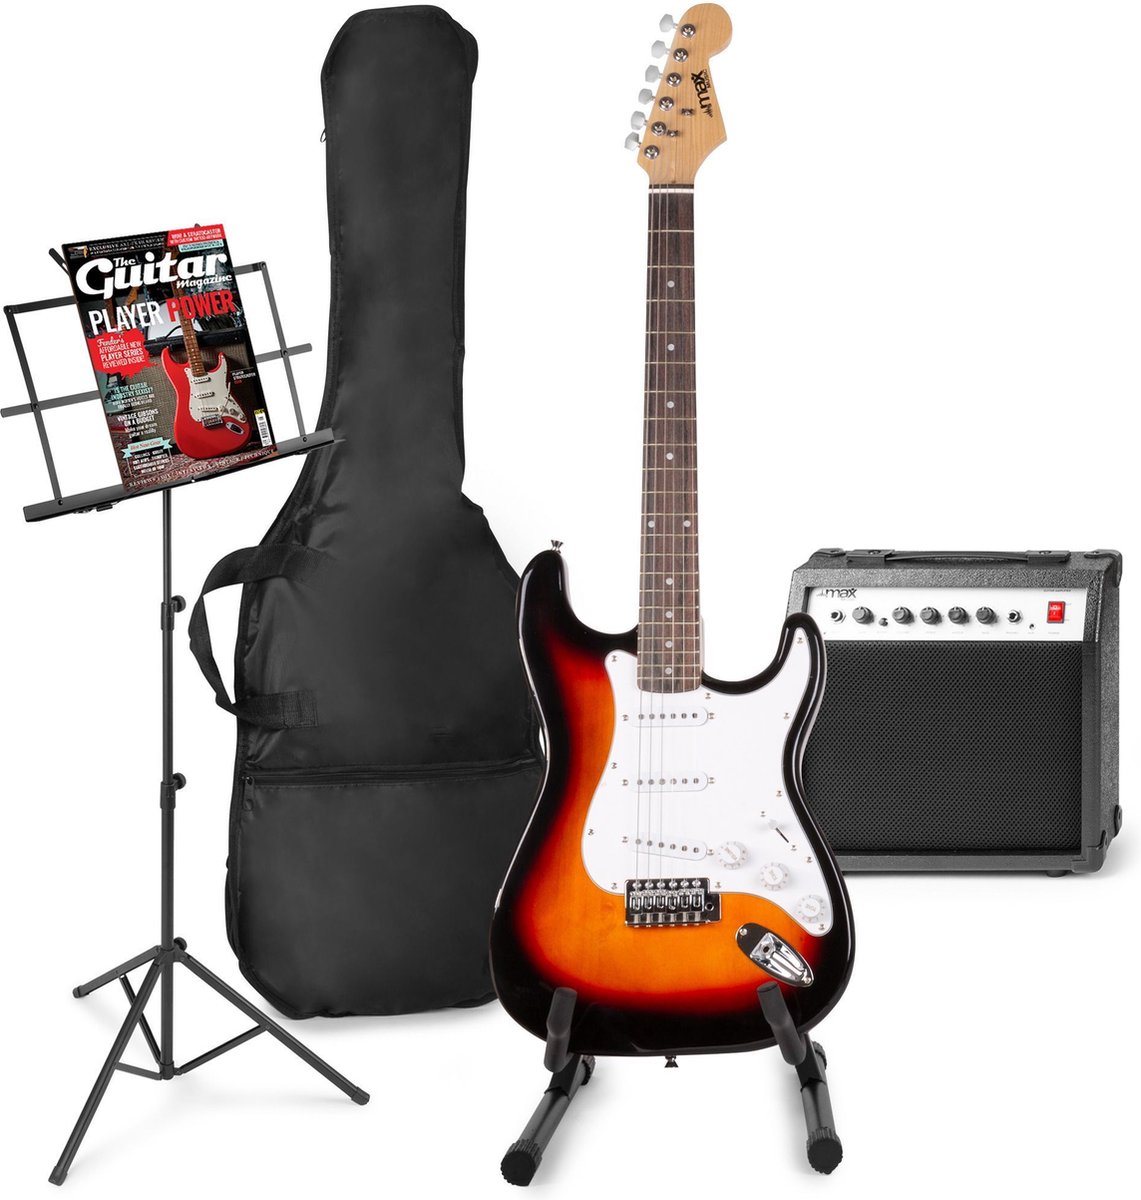 Elektrische gitaar met gitaar versterker - MAX Gigkit - Perfect voor beginners - incl. gitaar standaard, muziekstandaard, gitaar stemapparaat, gitaartas en plectrum - Sunburst